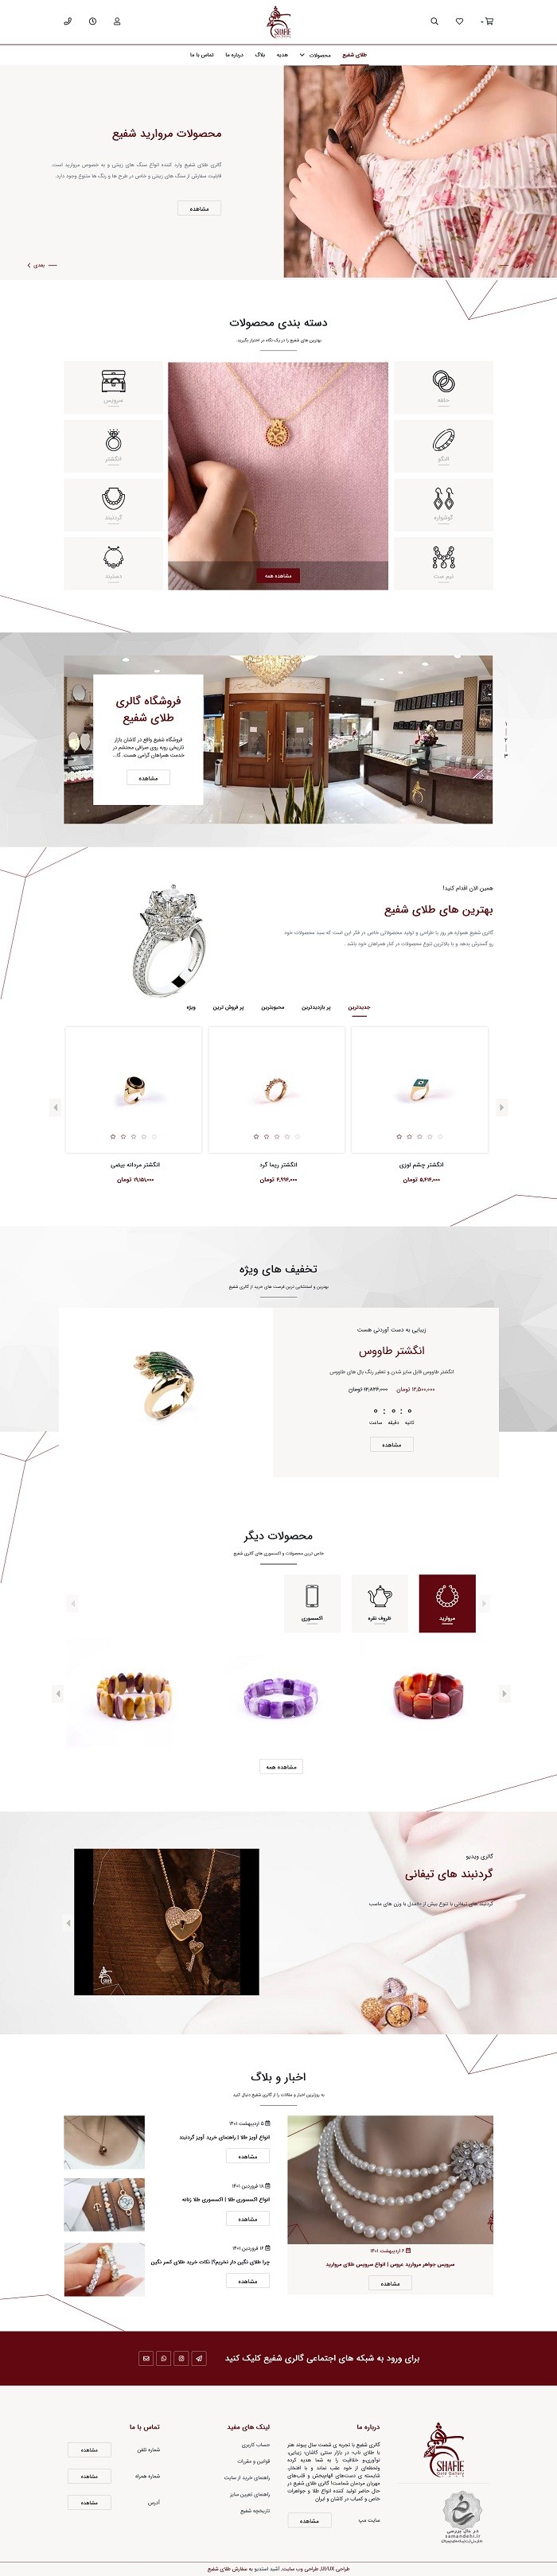 طراحی وب سایت گالری شفیع